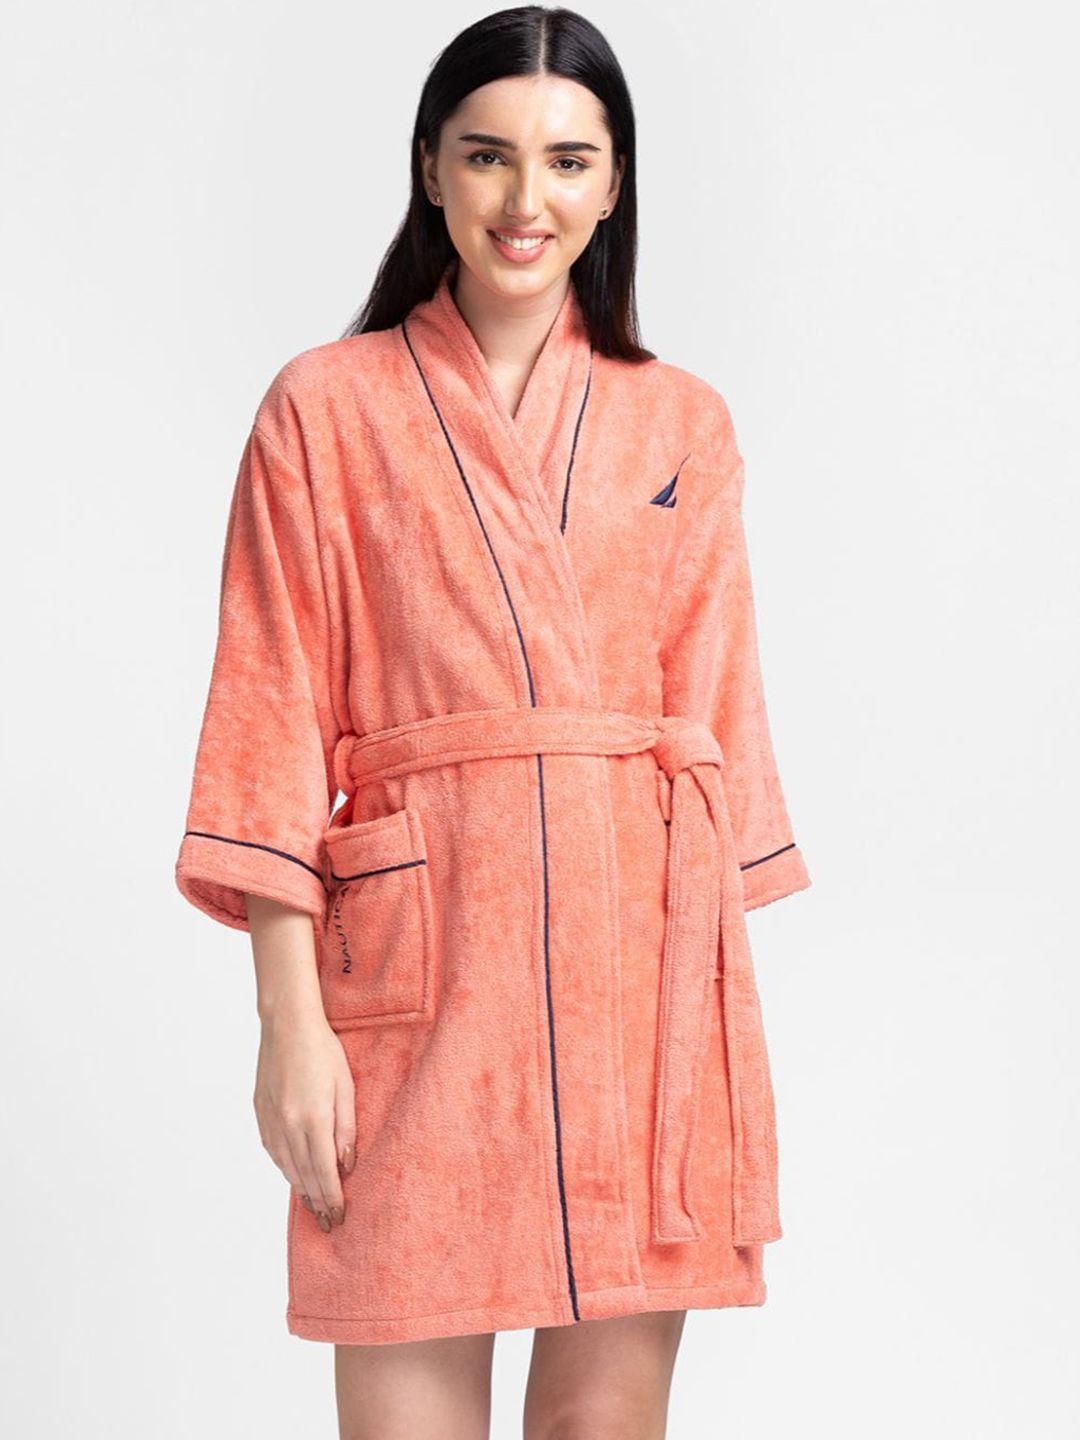 nautica women coral-colored solid pure cotton bath robe